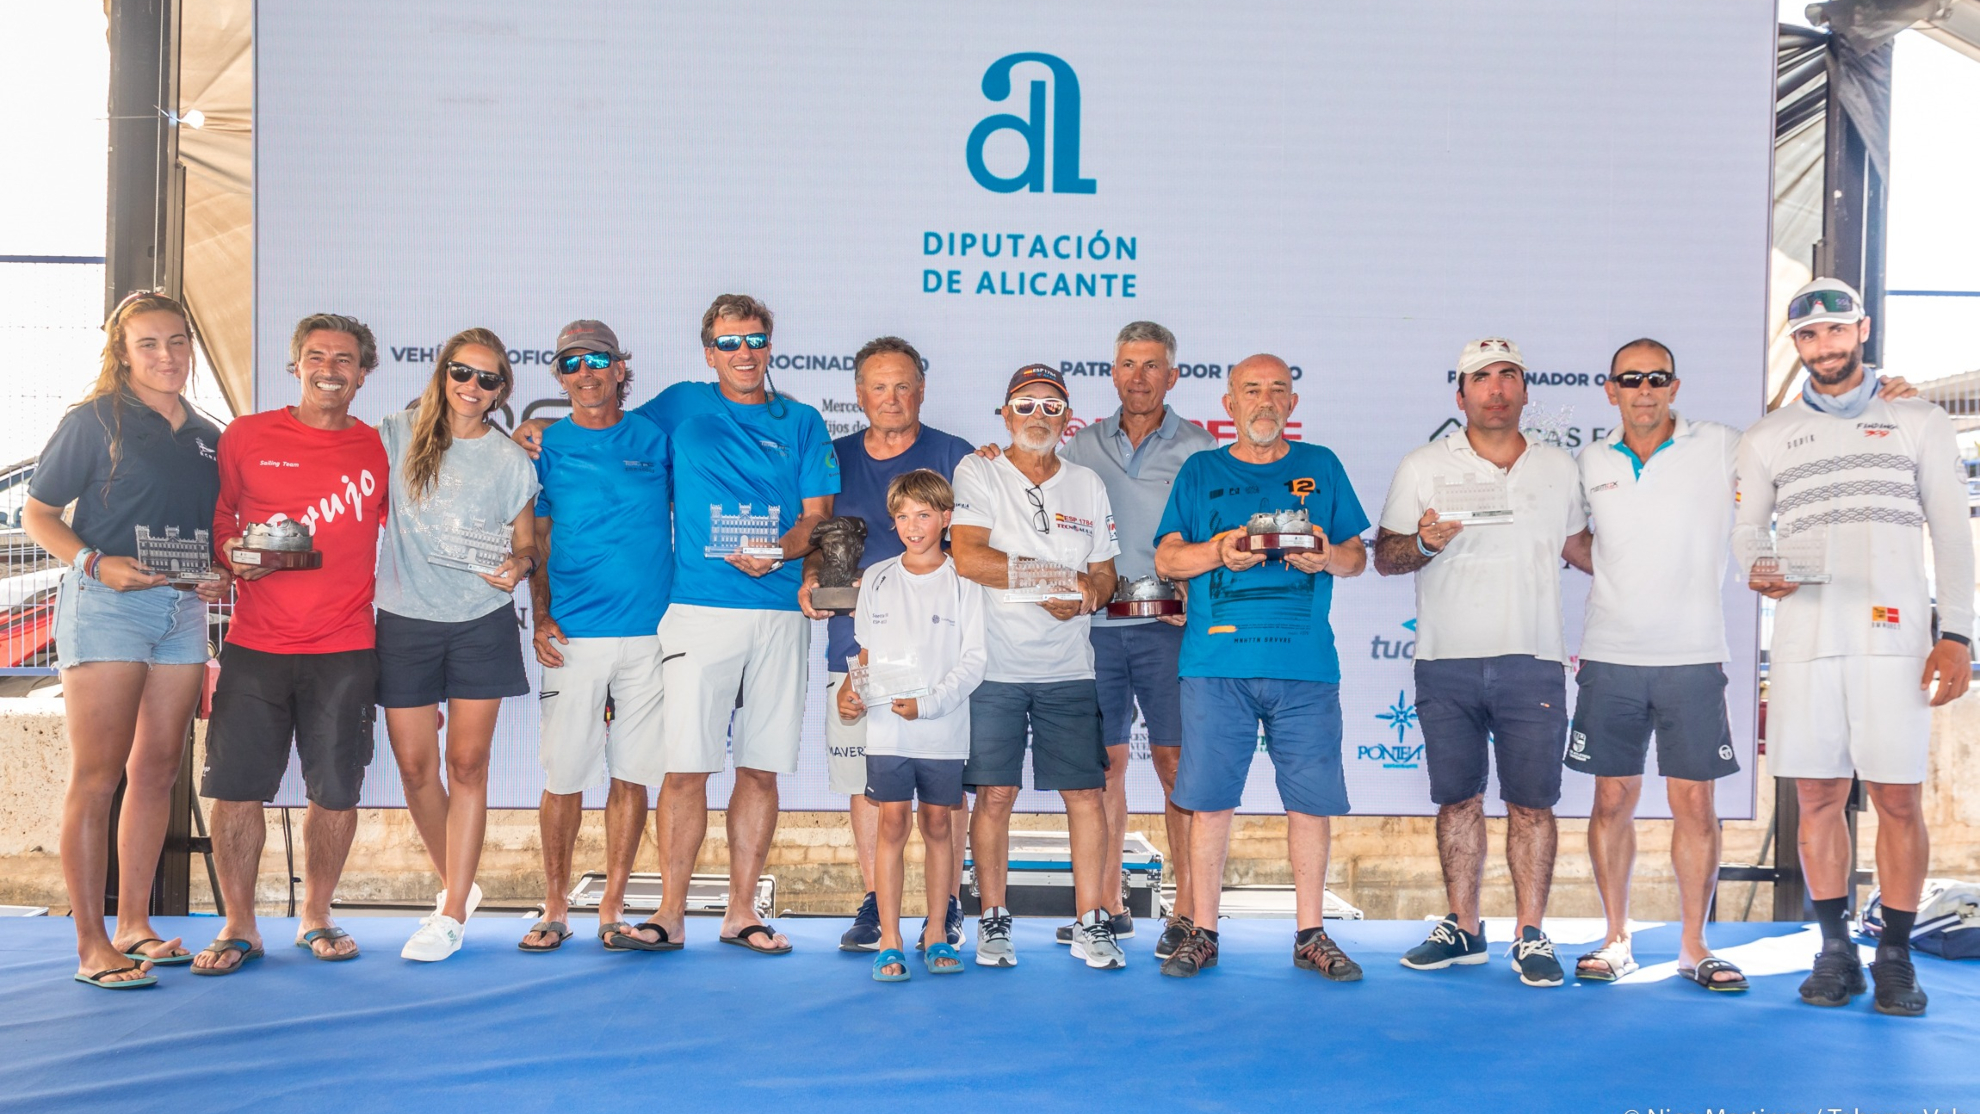 Los premiados en el 26º Tabarca Vela Diputación de Alicante.